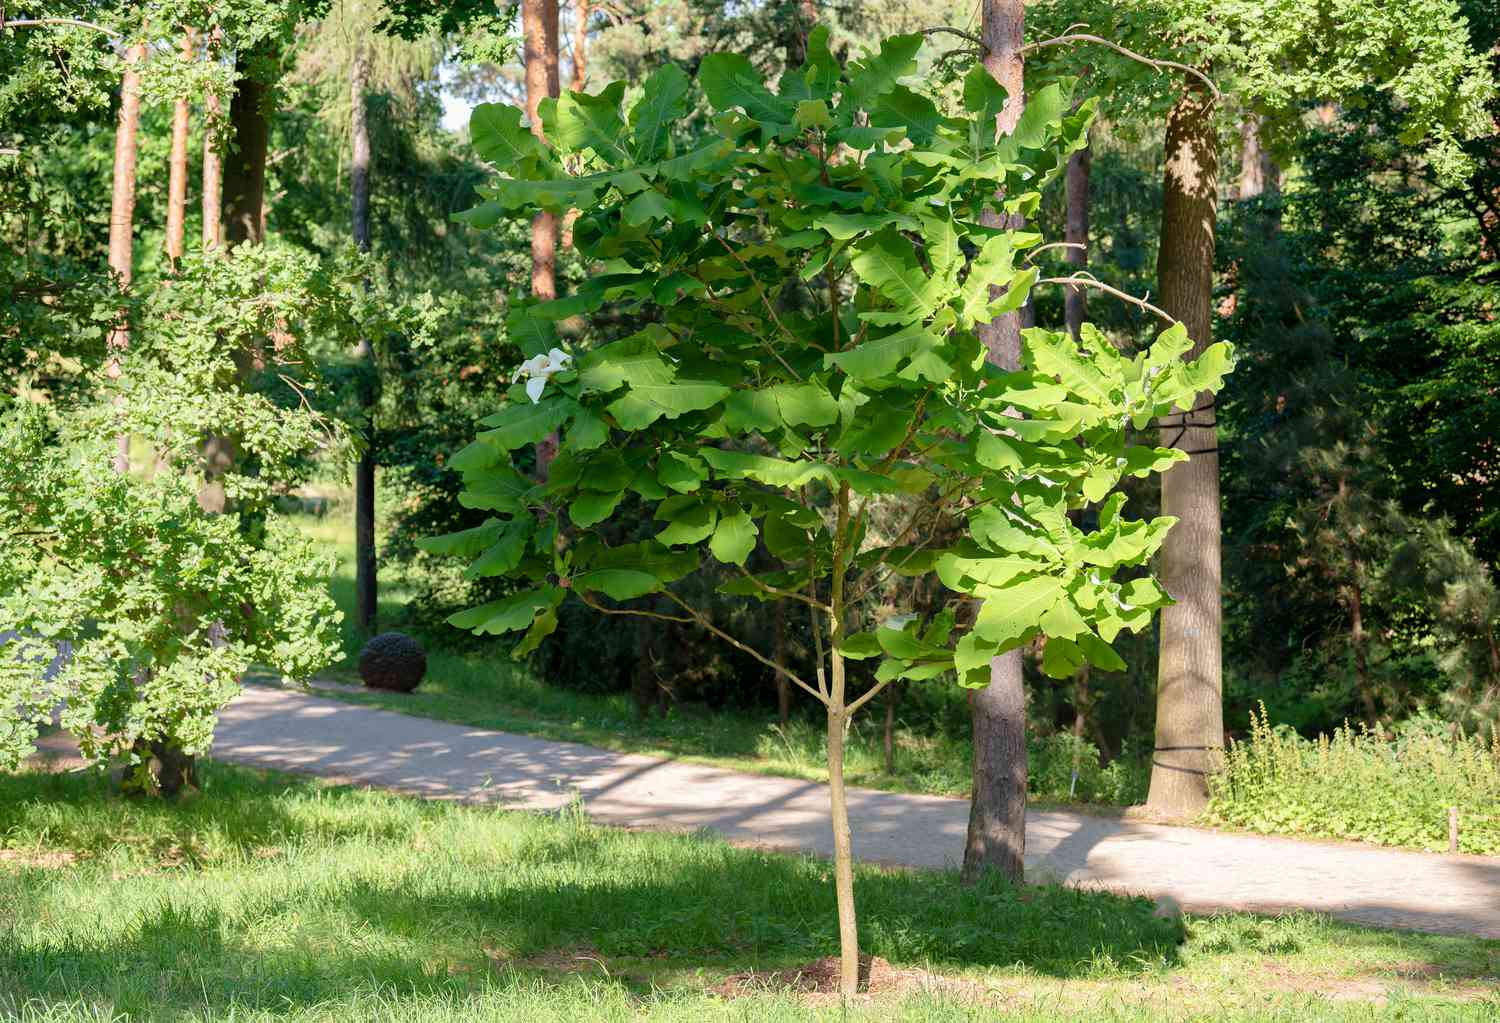 Großblättriger Magnolienbaum mit großen grünen Blättern an einem dünnen Stamm in der Nähe eines Weges